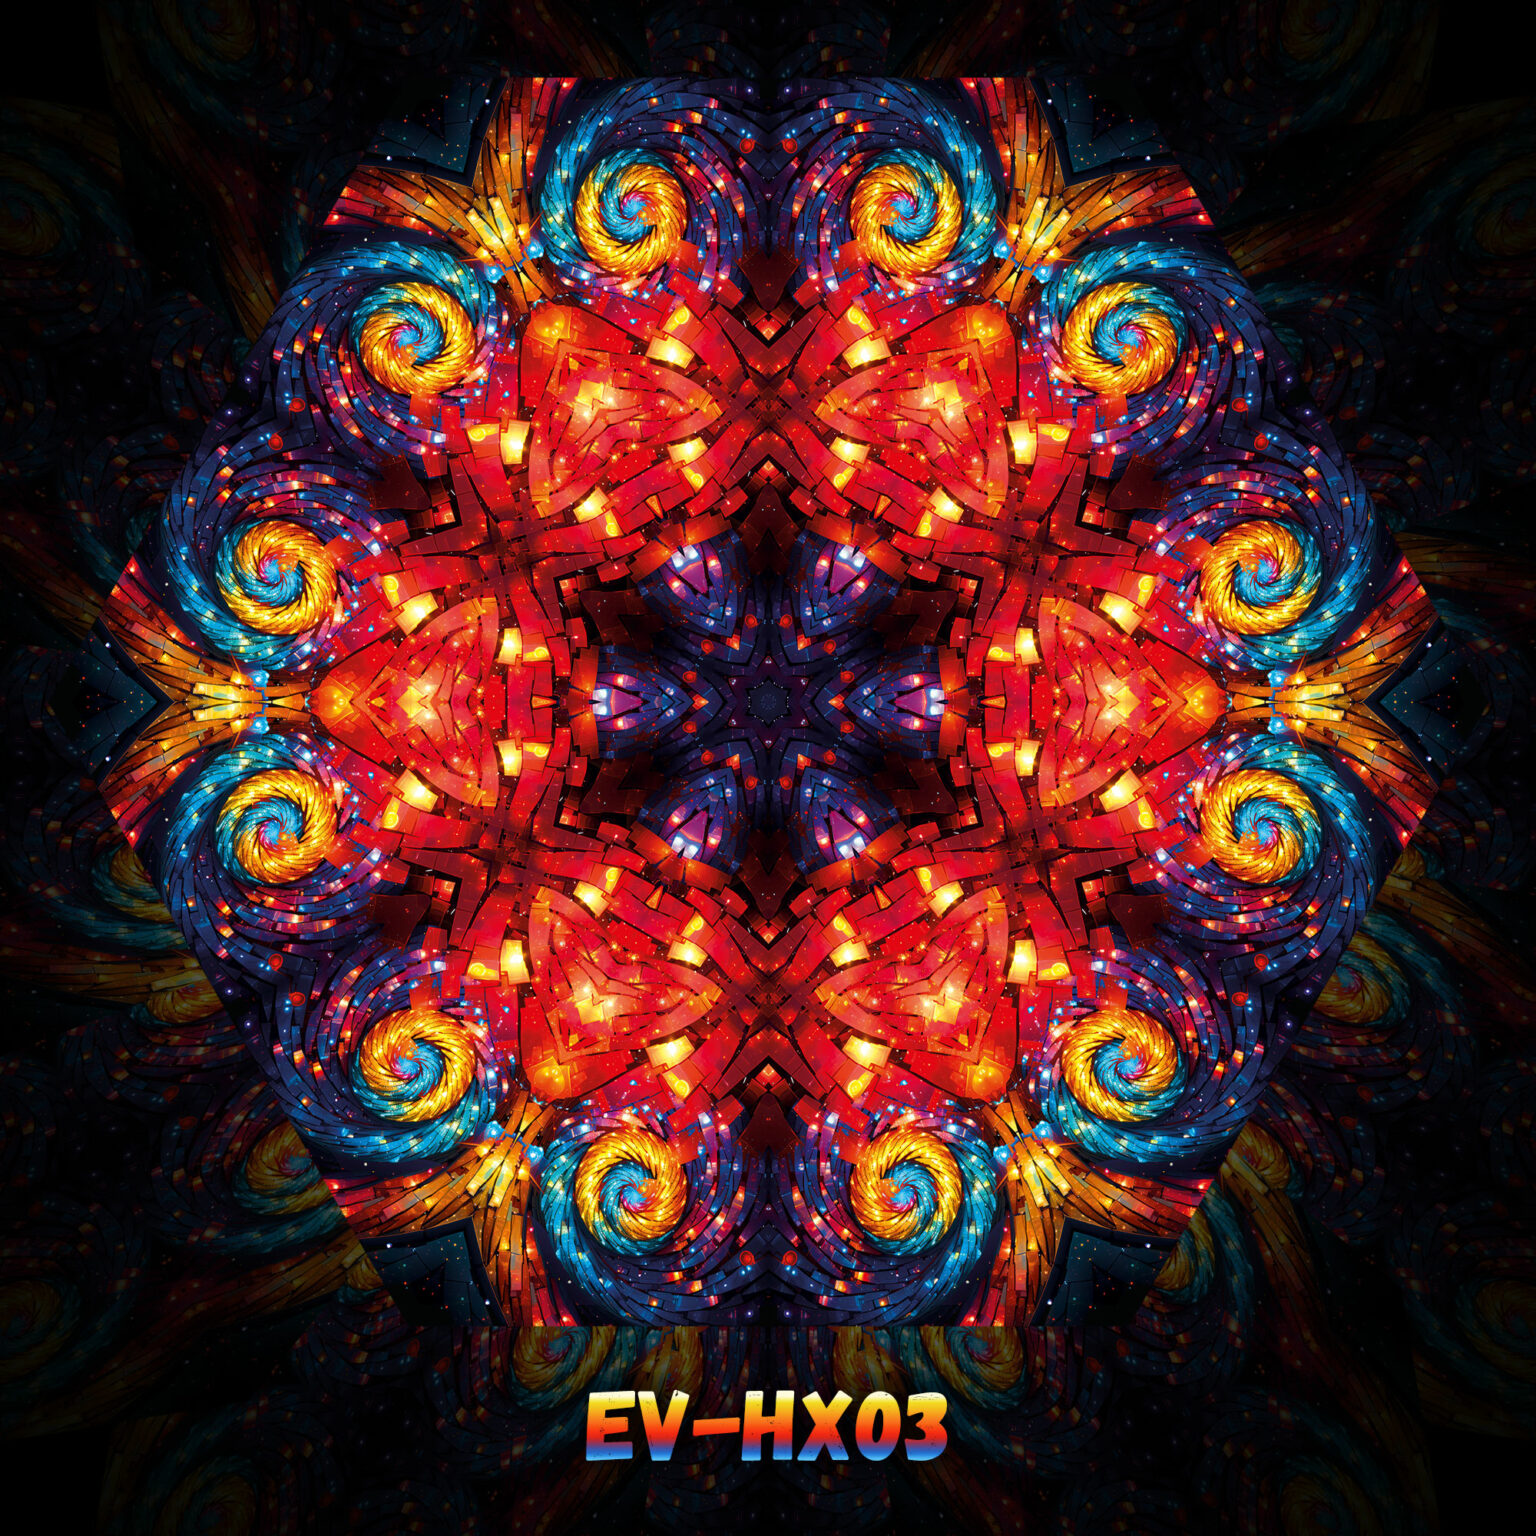 EV-HX03 - UV-Hexagon - Design Preview